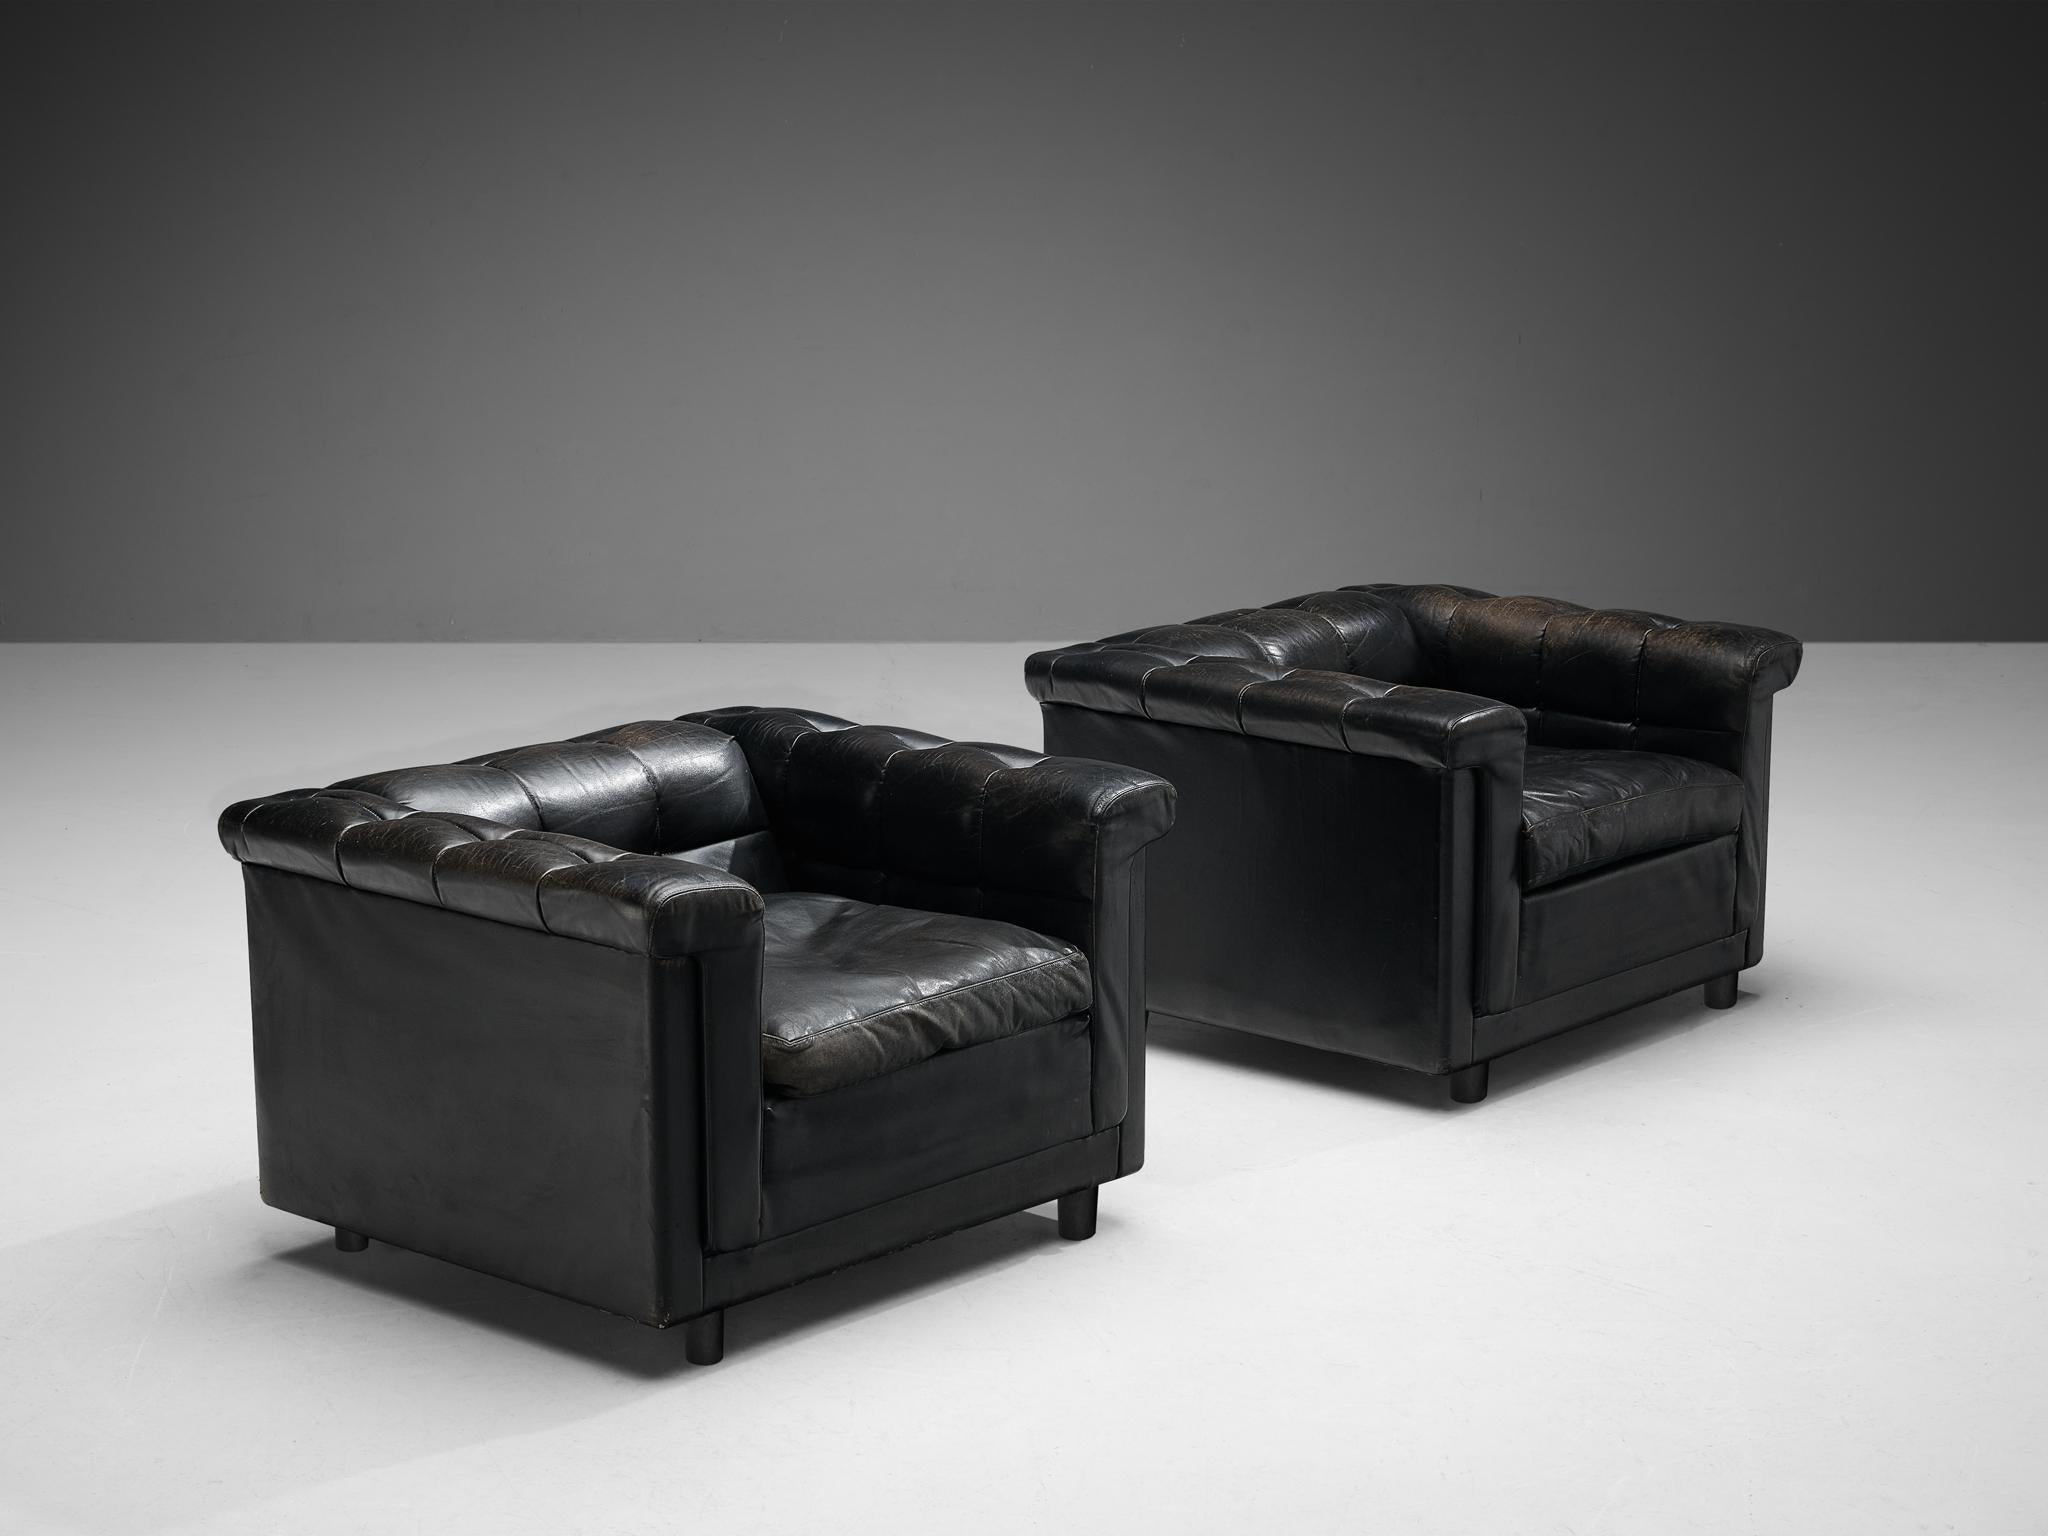 Coppia di sedie lounge, pelle nera, legno, Nord Europa, anni '80

Il design di questa coppia di sedie lounge è caratterizzato da una struttura cubica. Quando sei seduto provi una piacevole sensazione di chiusura. I braccioli e gli schienali con